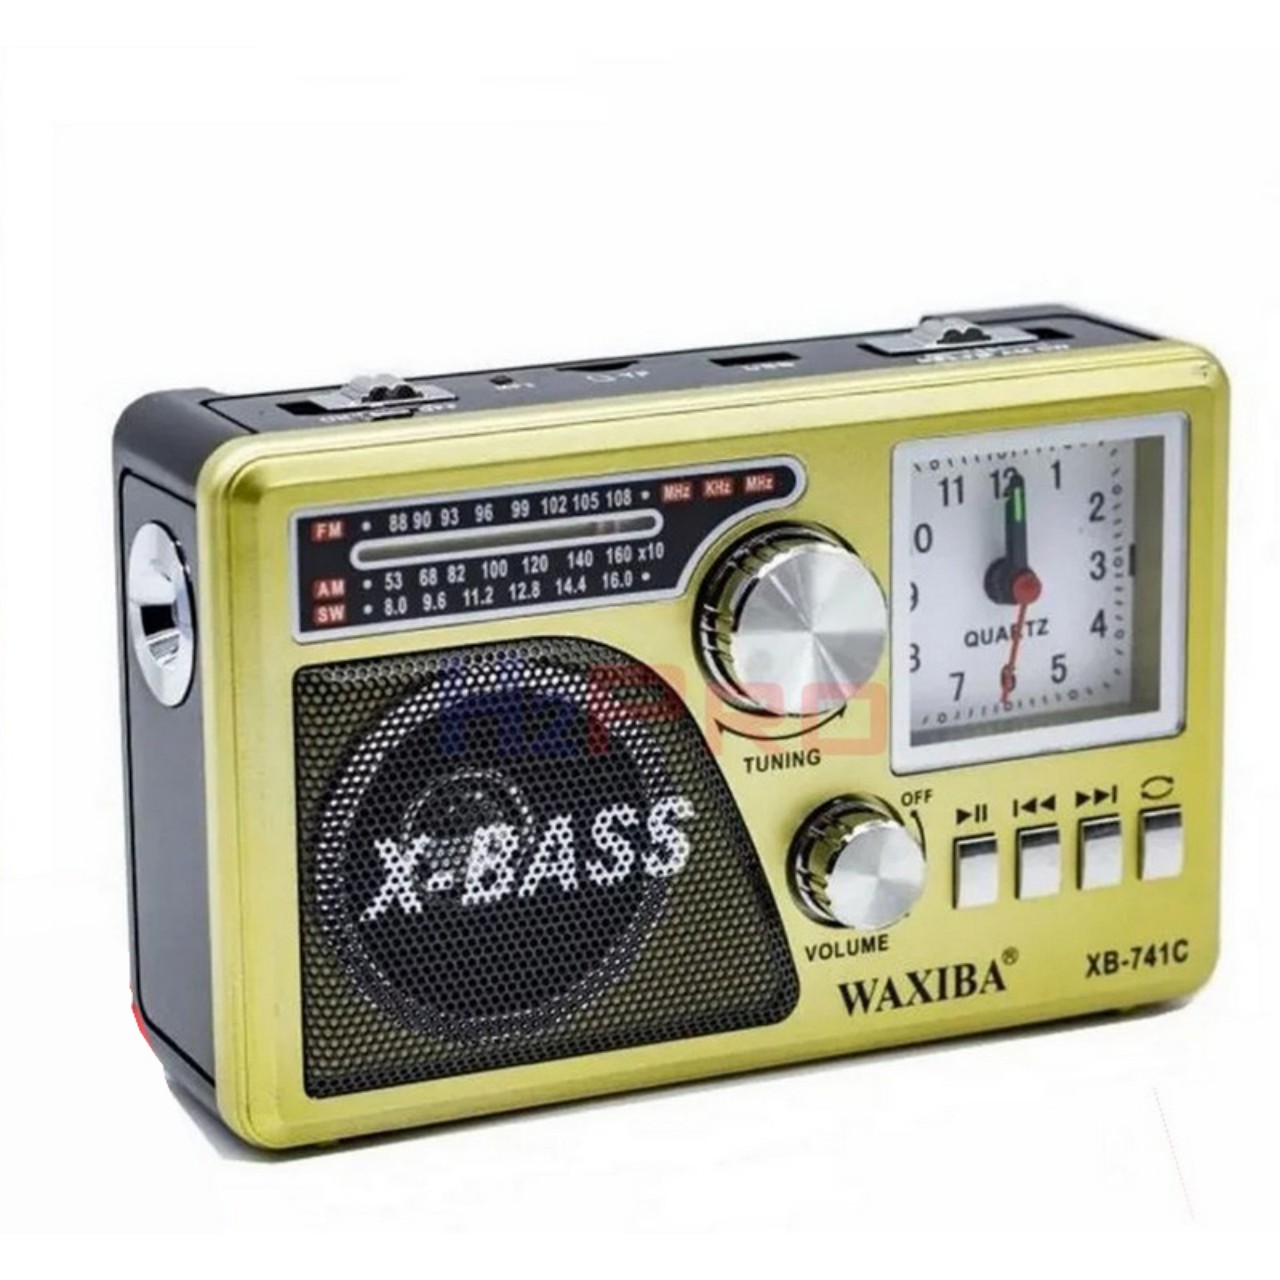 ĐÀI FM WAXIBA XB-XB741C CÓ ĐỒNG HỒ , NGHE NHẠC USB THẺ NHỚ RADIO AM FM SW CÓ ĐÈN PIN THEO KÈM PIN SẠC –HÀNG CHÍNH HÃNG